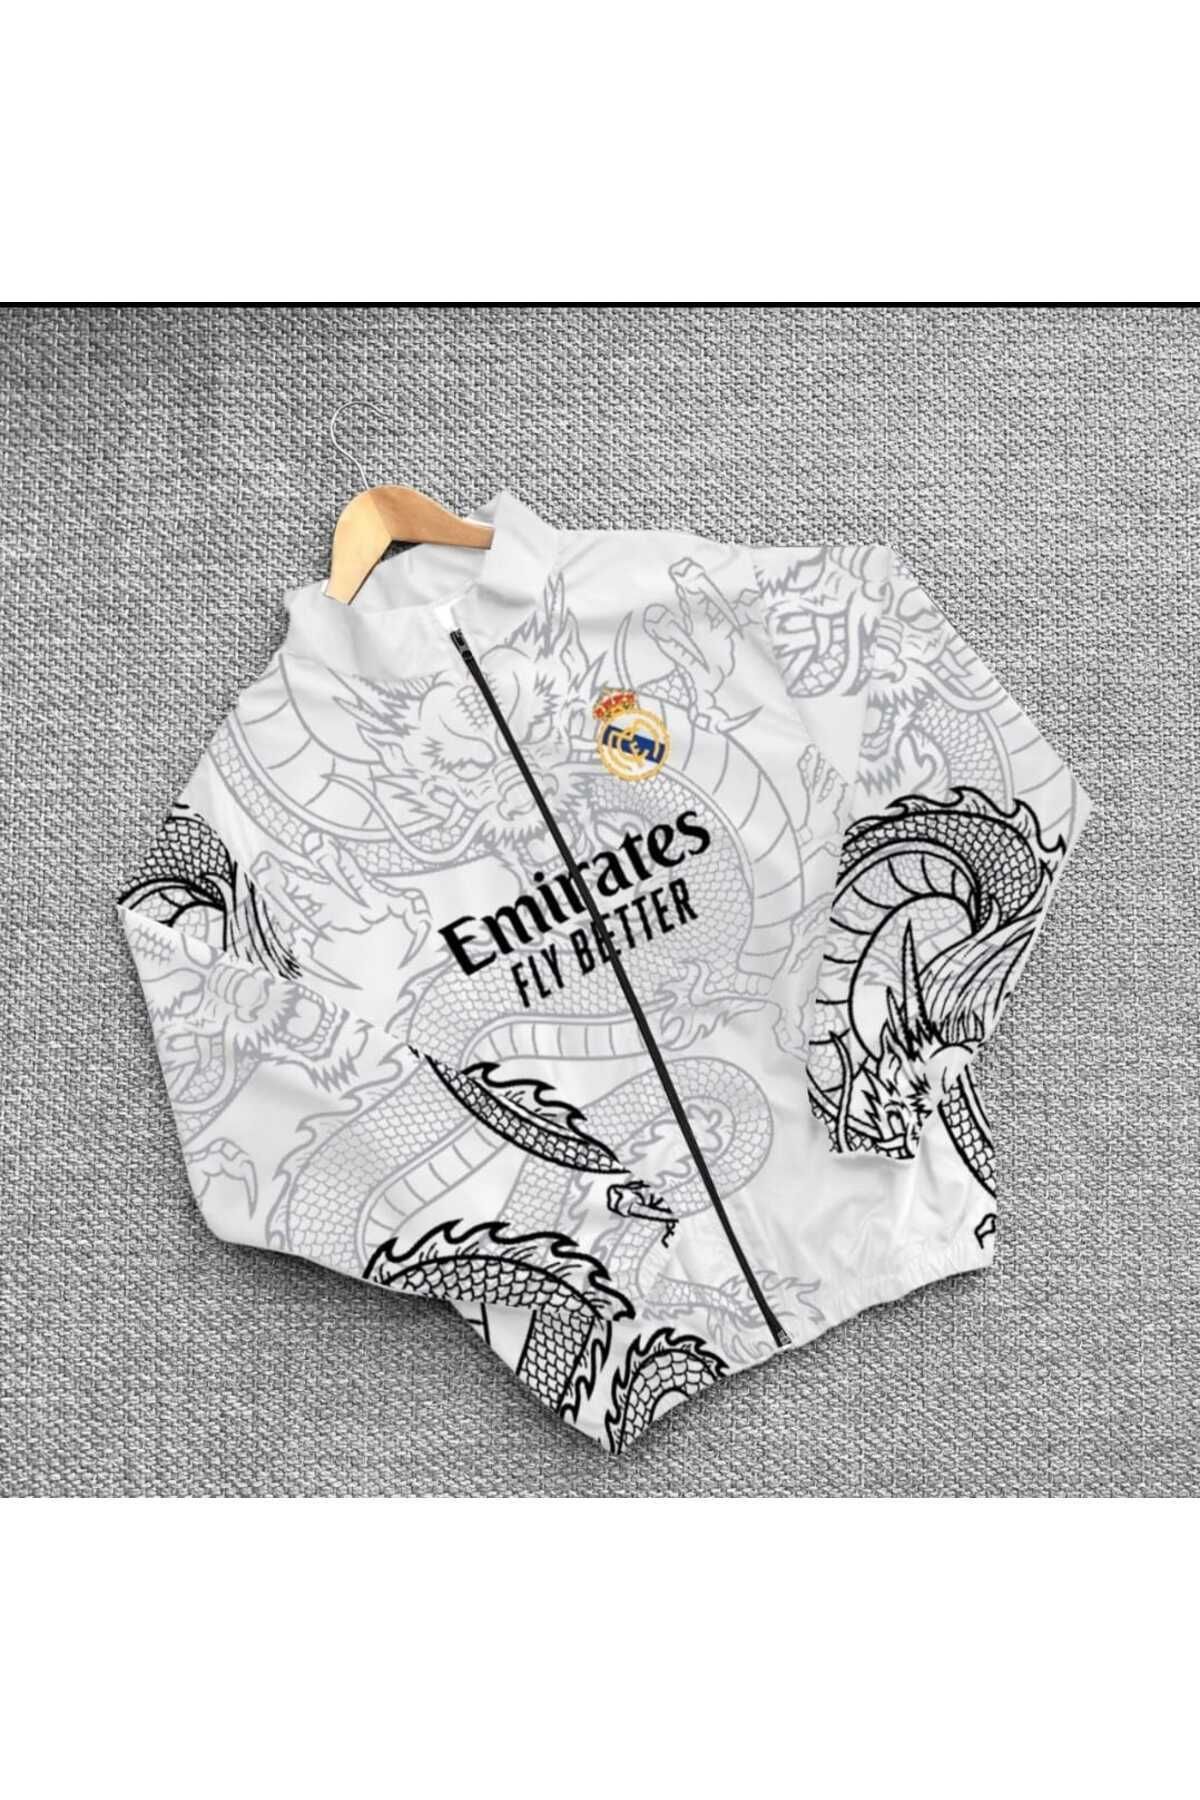 Real Madrid Baskılı Paraşüt Kumaş Ceket Unisex